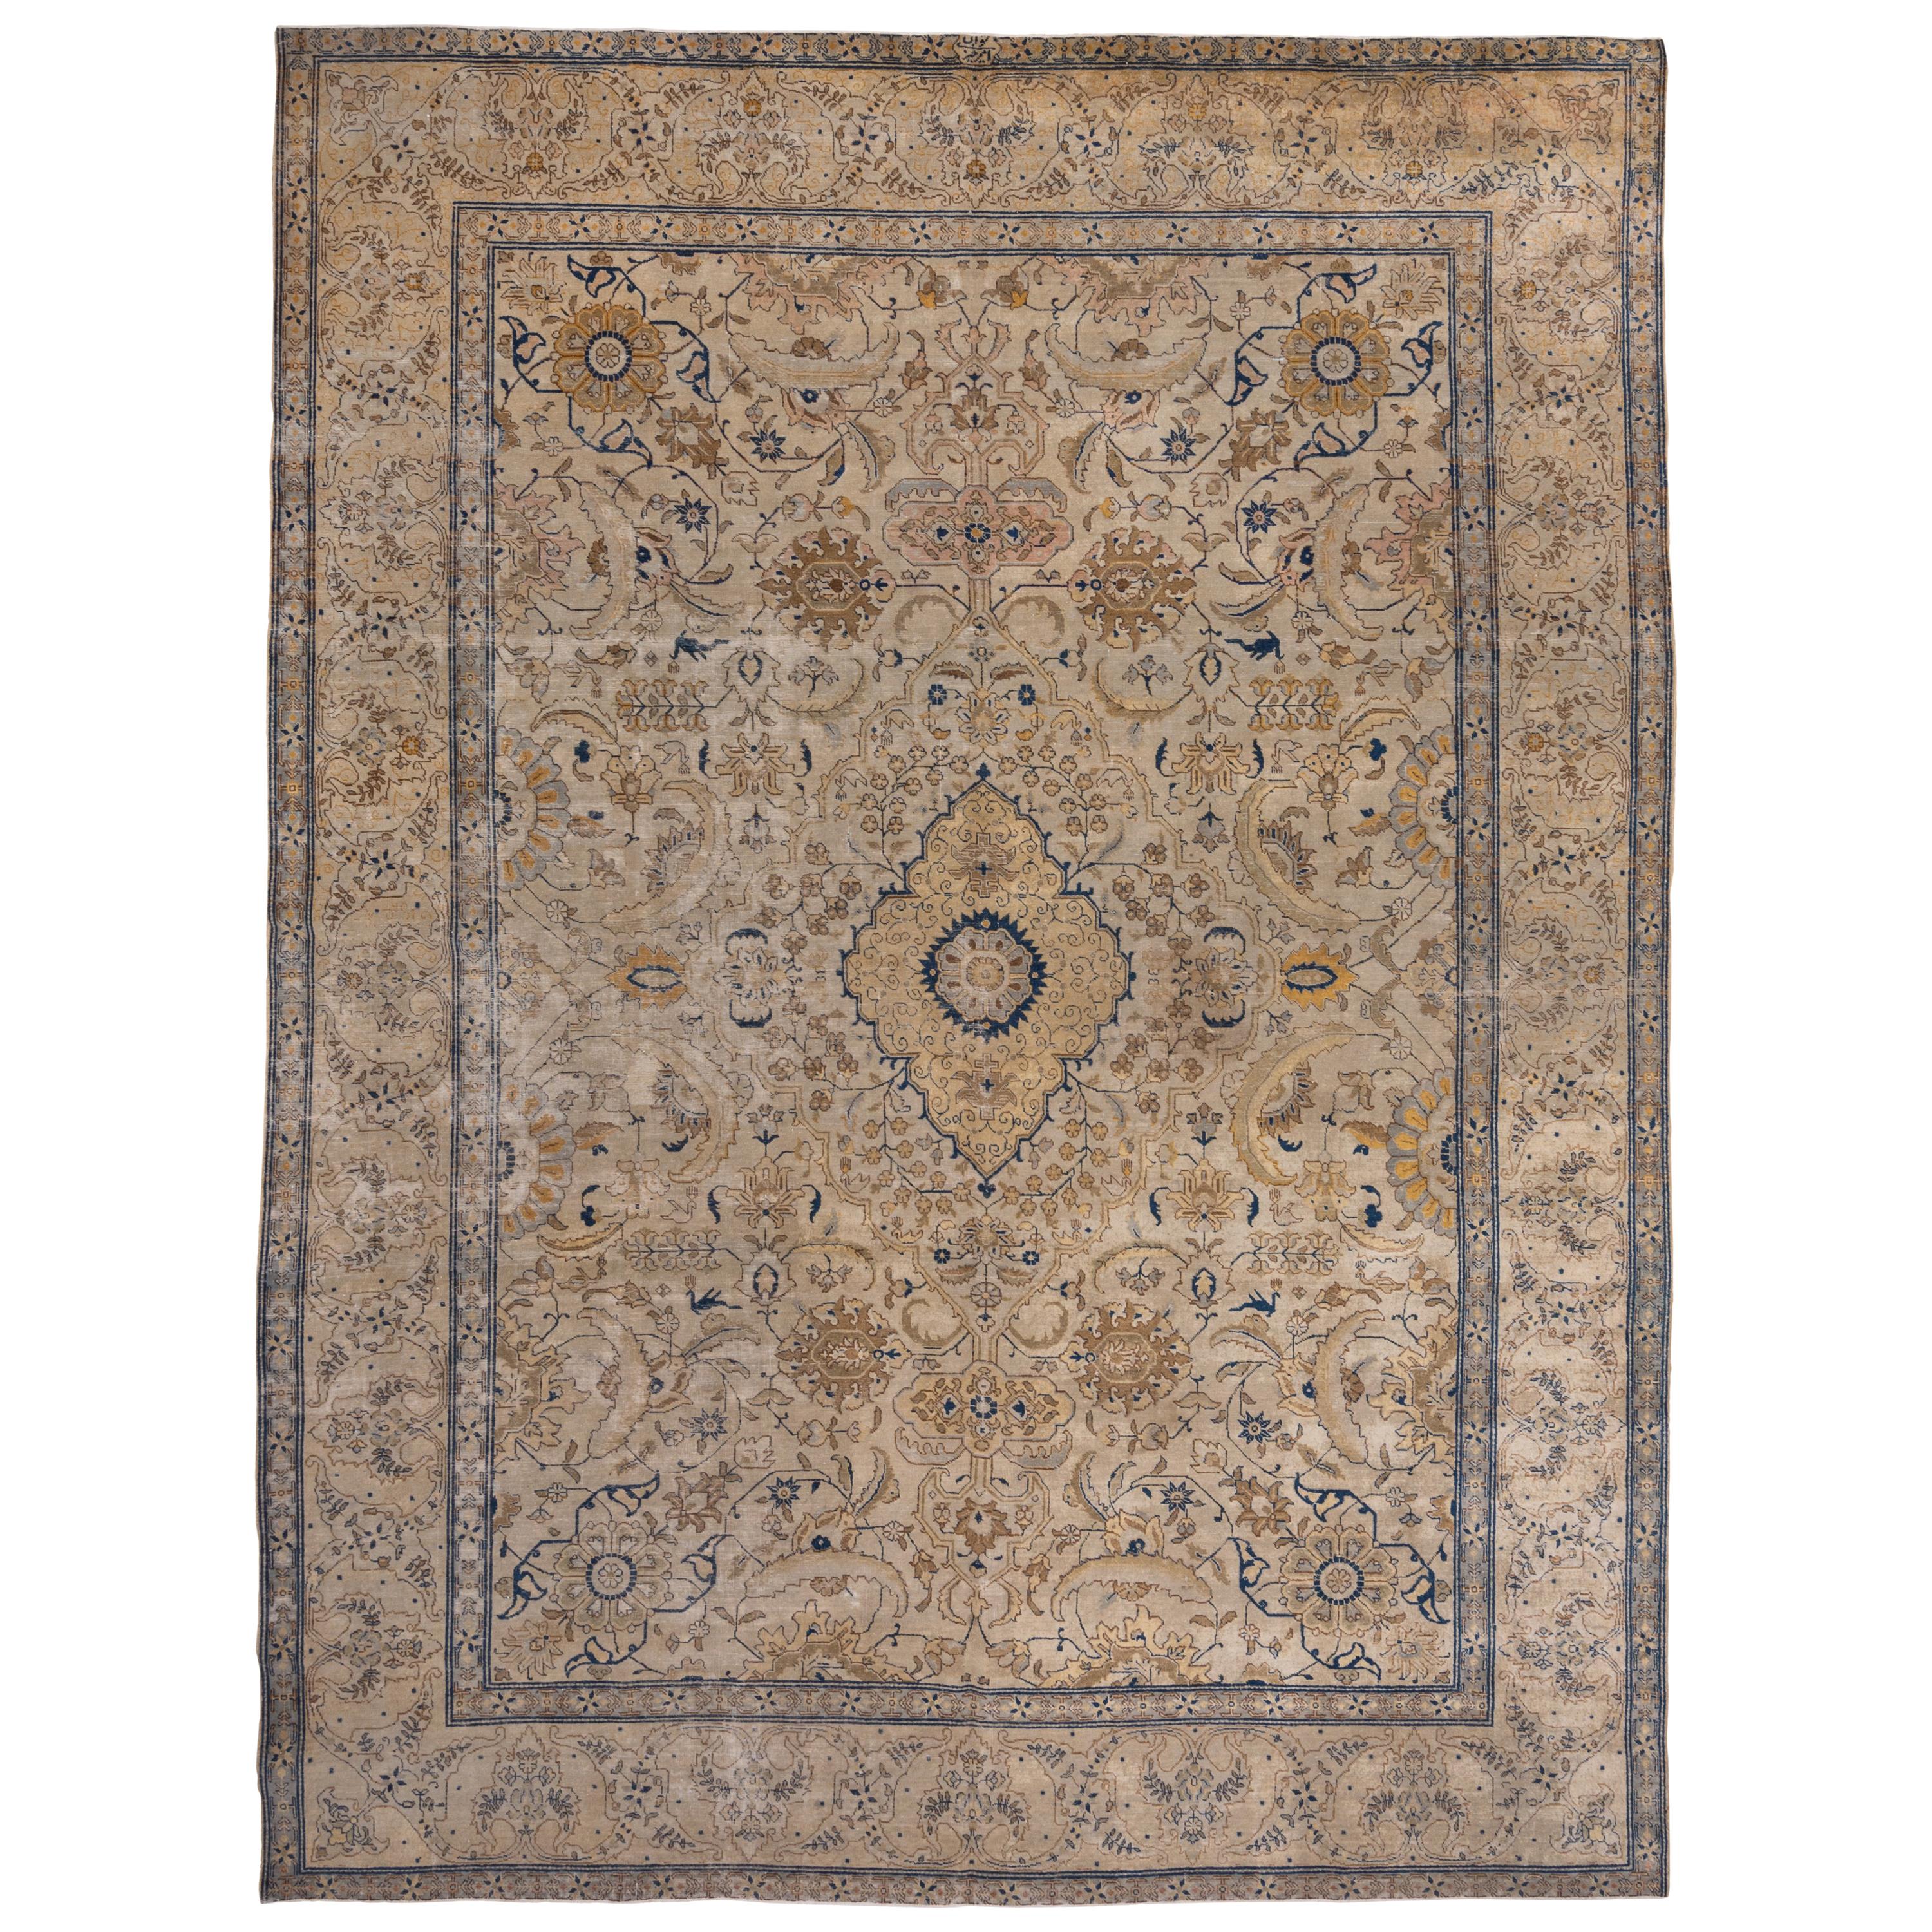 Antique Tabriz Carpet, circa 1920s Gold Tones